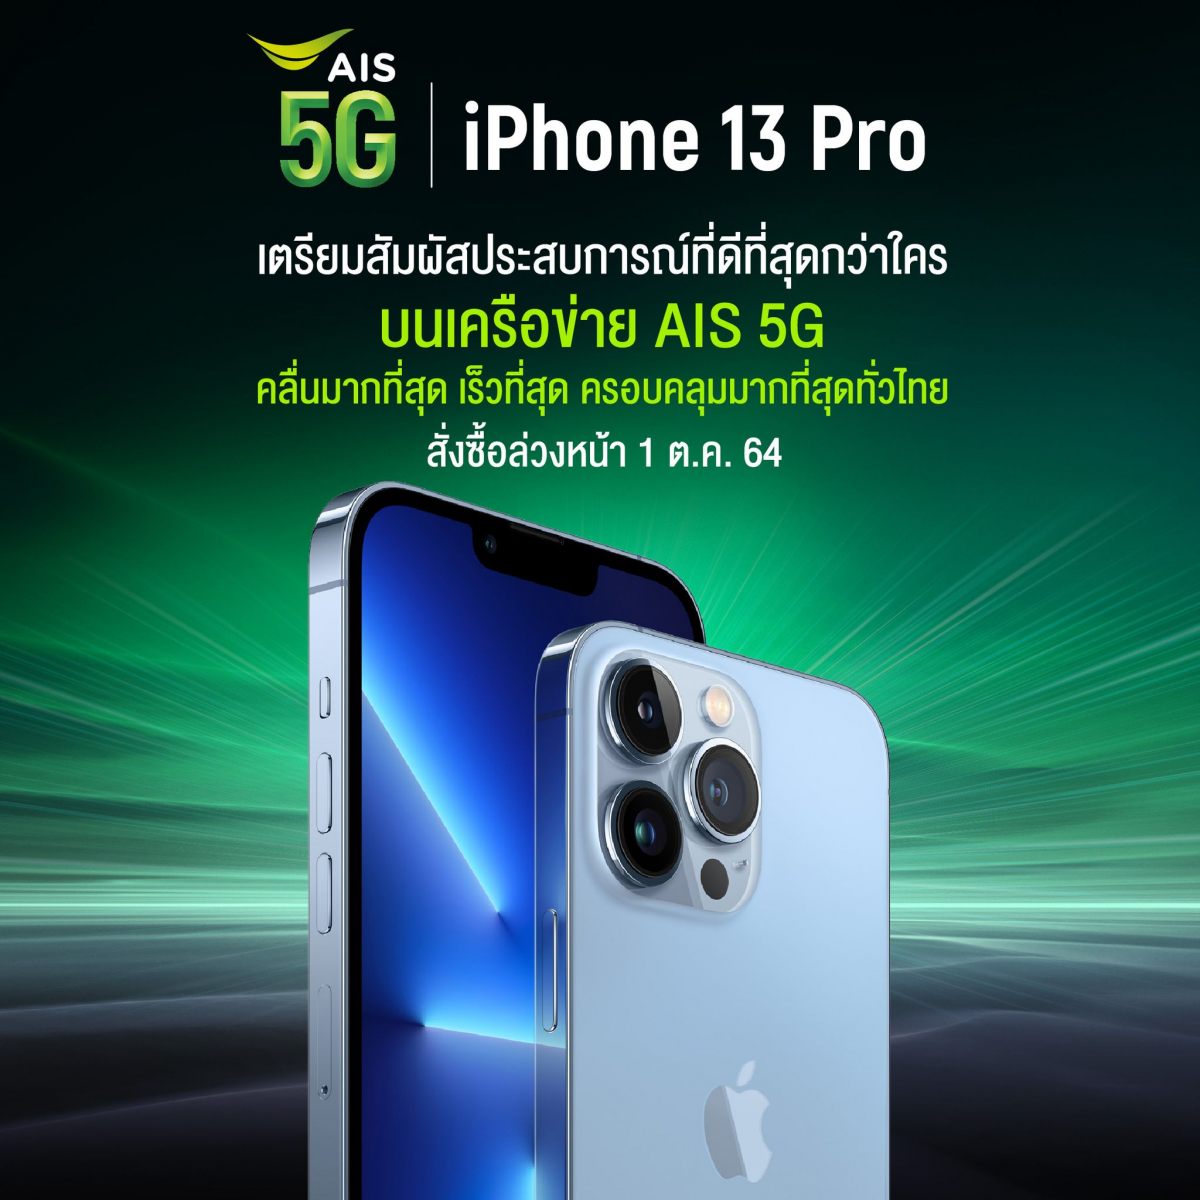 AIS 5G เตรียมวางจำหน่าย iPhone 13 Pro, iPhone 13 Pro Max, iPhone 13 และ iPhone 13 mini ใหม่ โดยจะเปิดให้สั่งซื้อล่วงหน้าในวันที่ 1 ตุลาคม